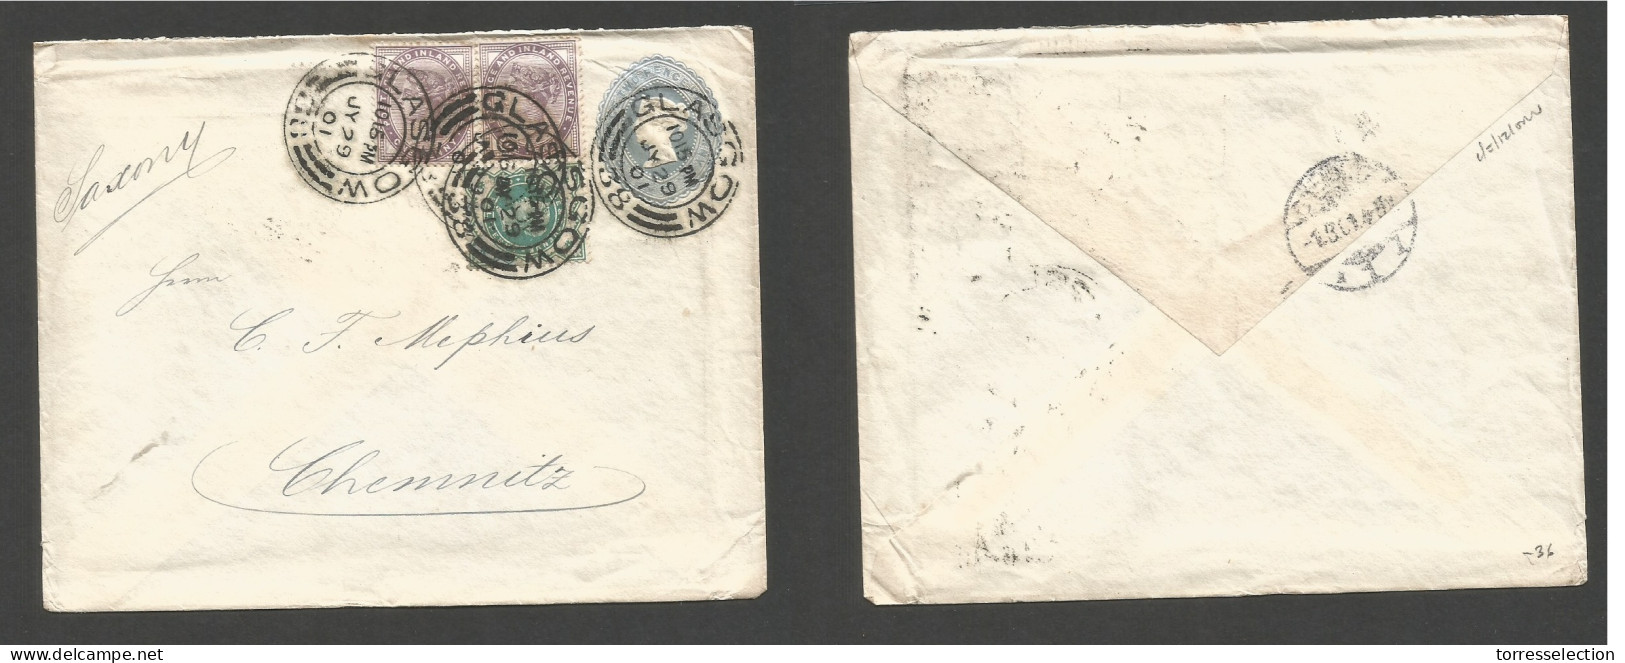 Great Britain - Stationery. 1901 (29 July) Glasgow, Scotland - Germany, Chemnitz, Saxony. 2d Grey Blue Stat Env + 3 Adtl - ...-1840 Vorläufer